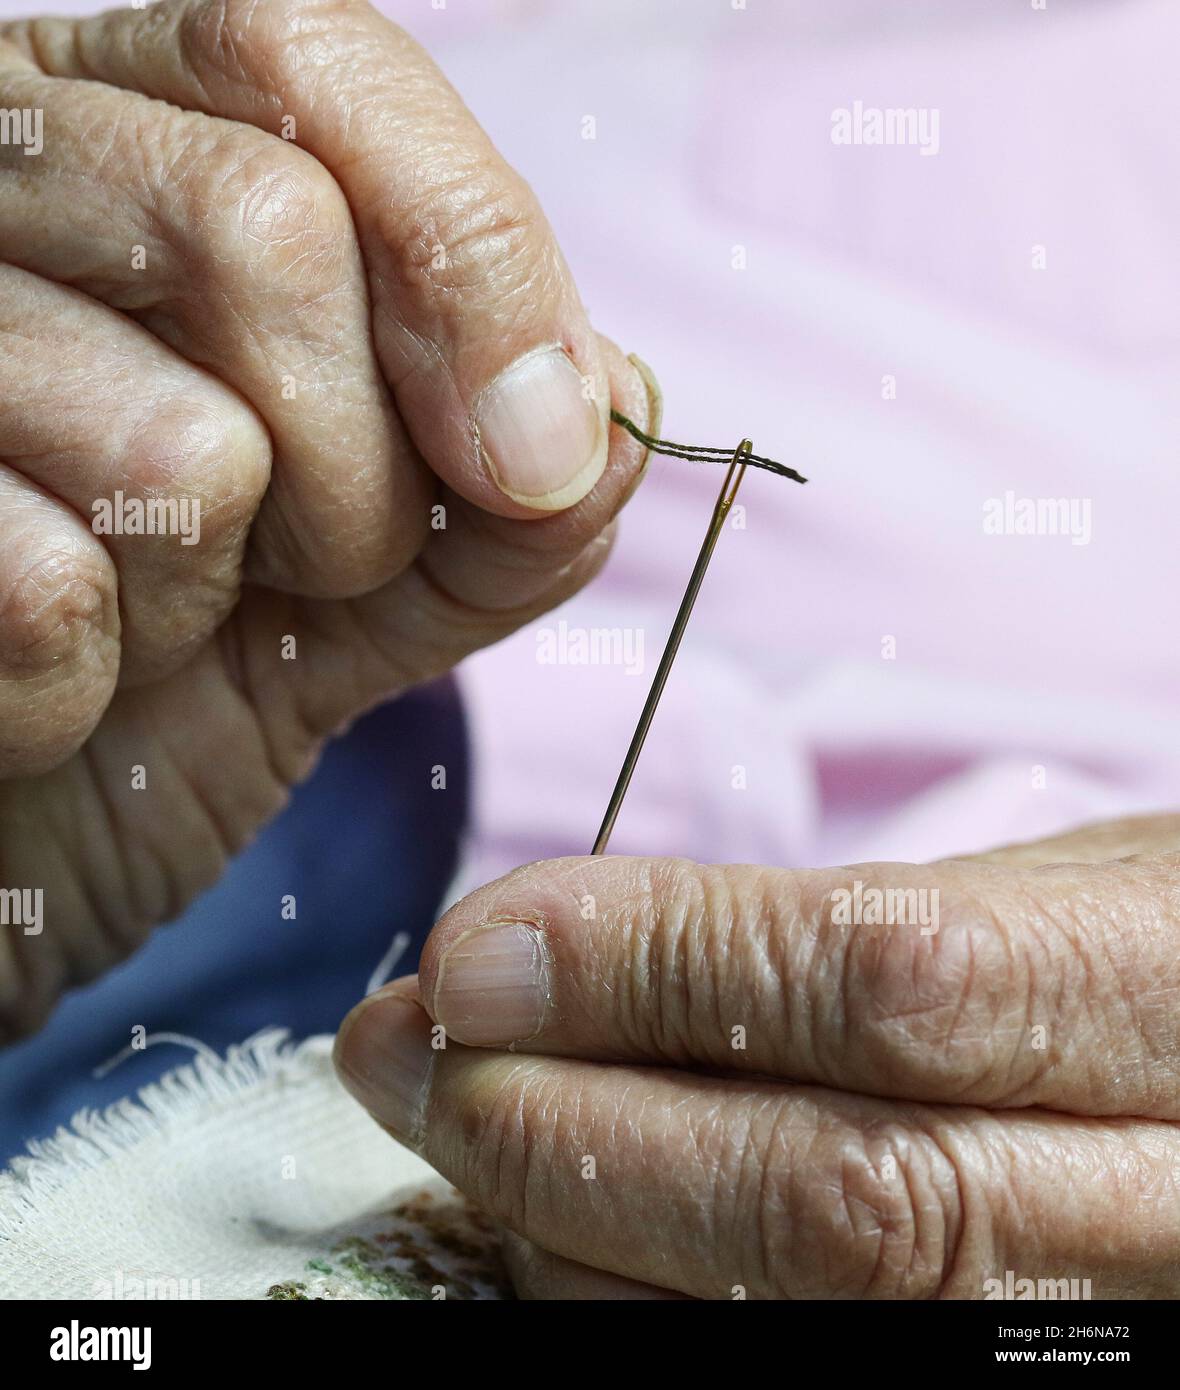 Immagine generica di donne anziane che usano un ago per cucire. Foto Stock